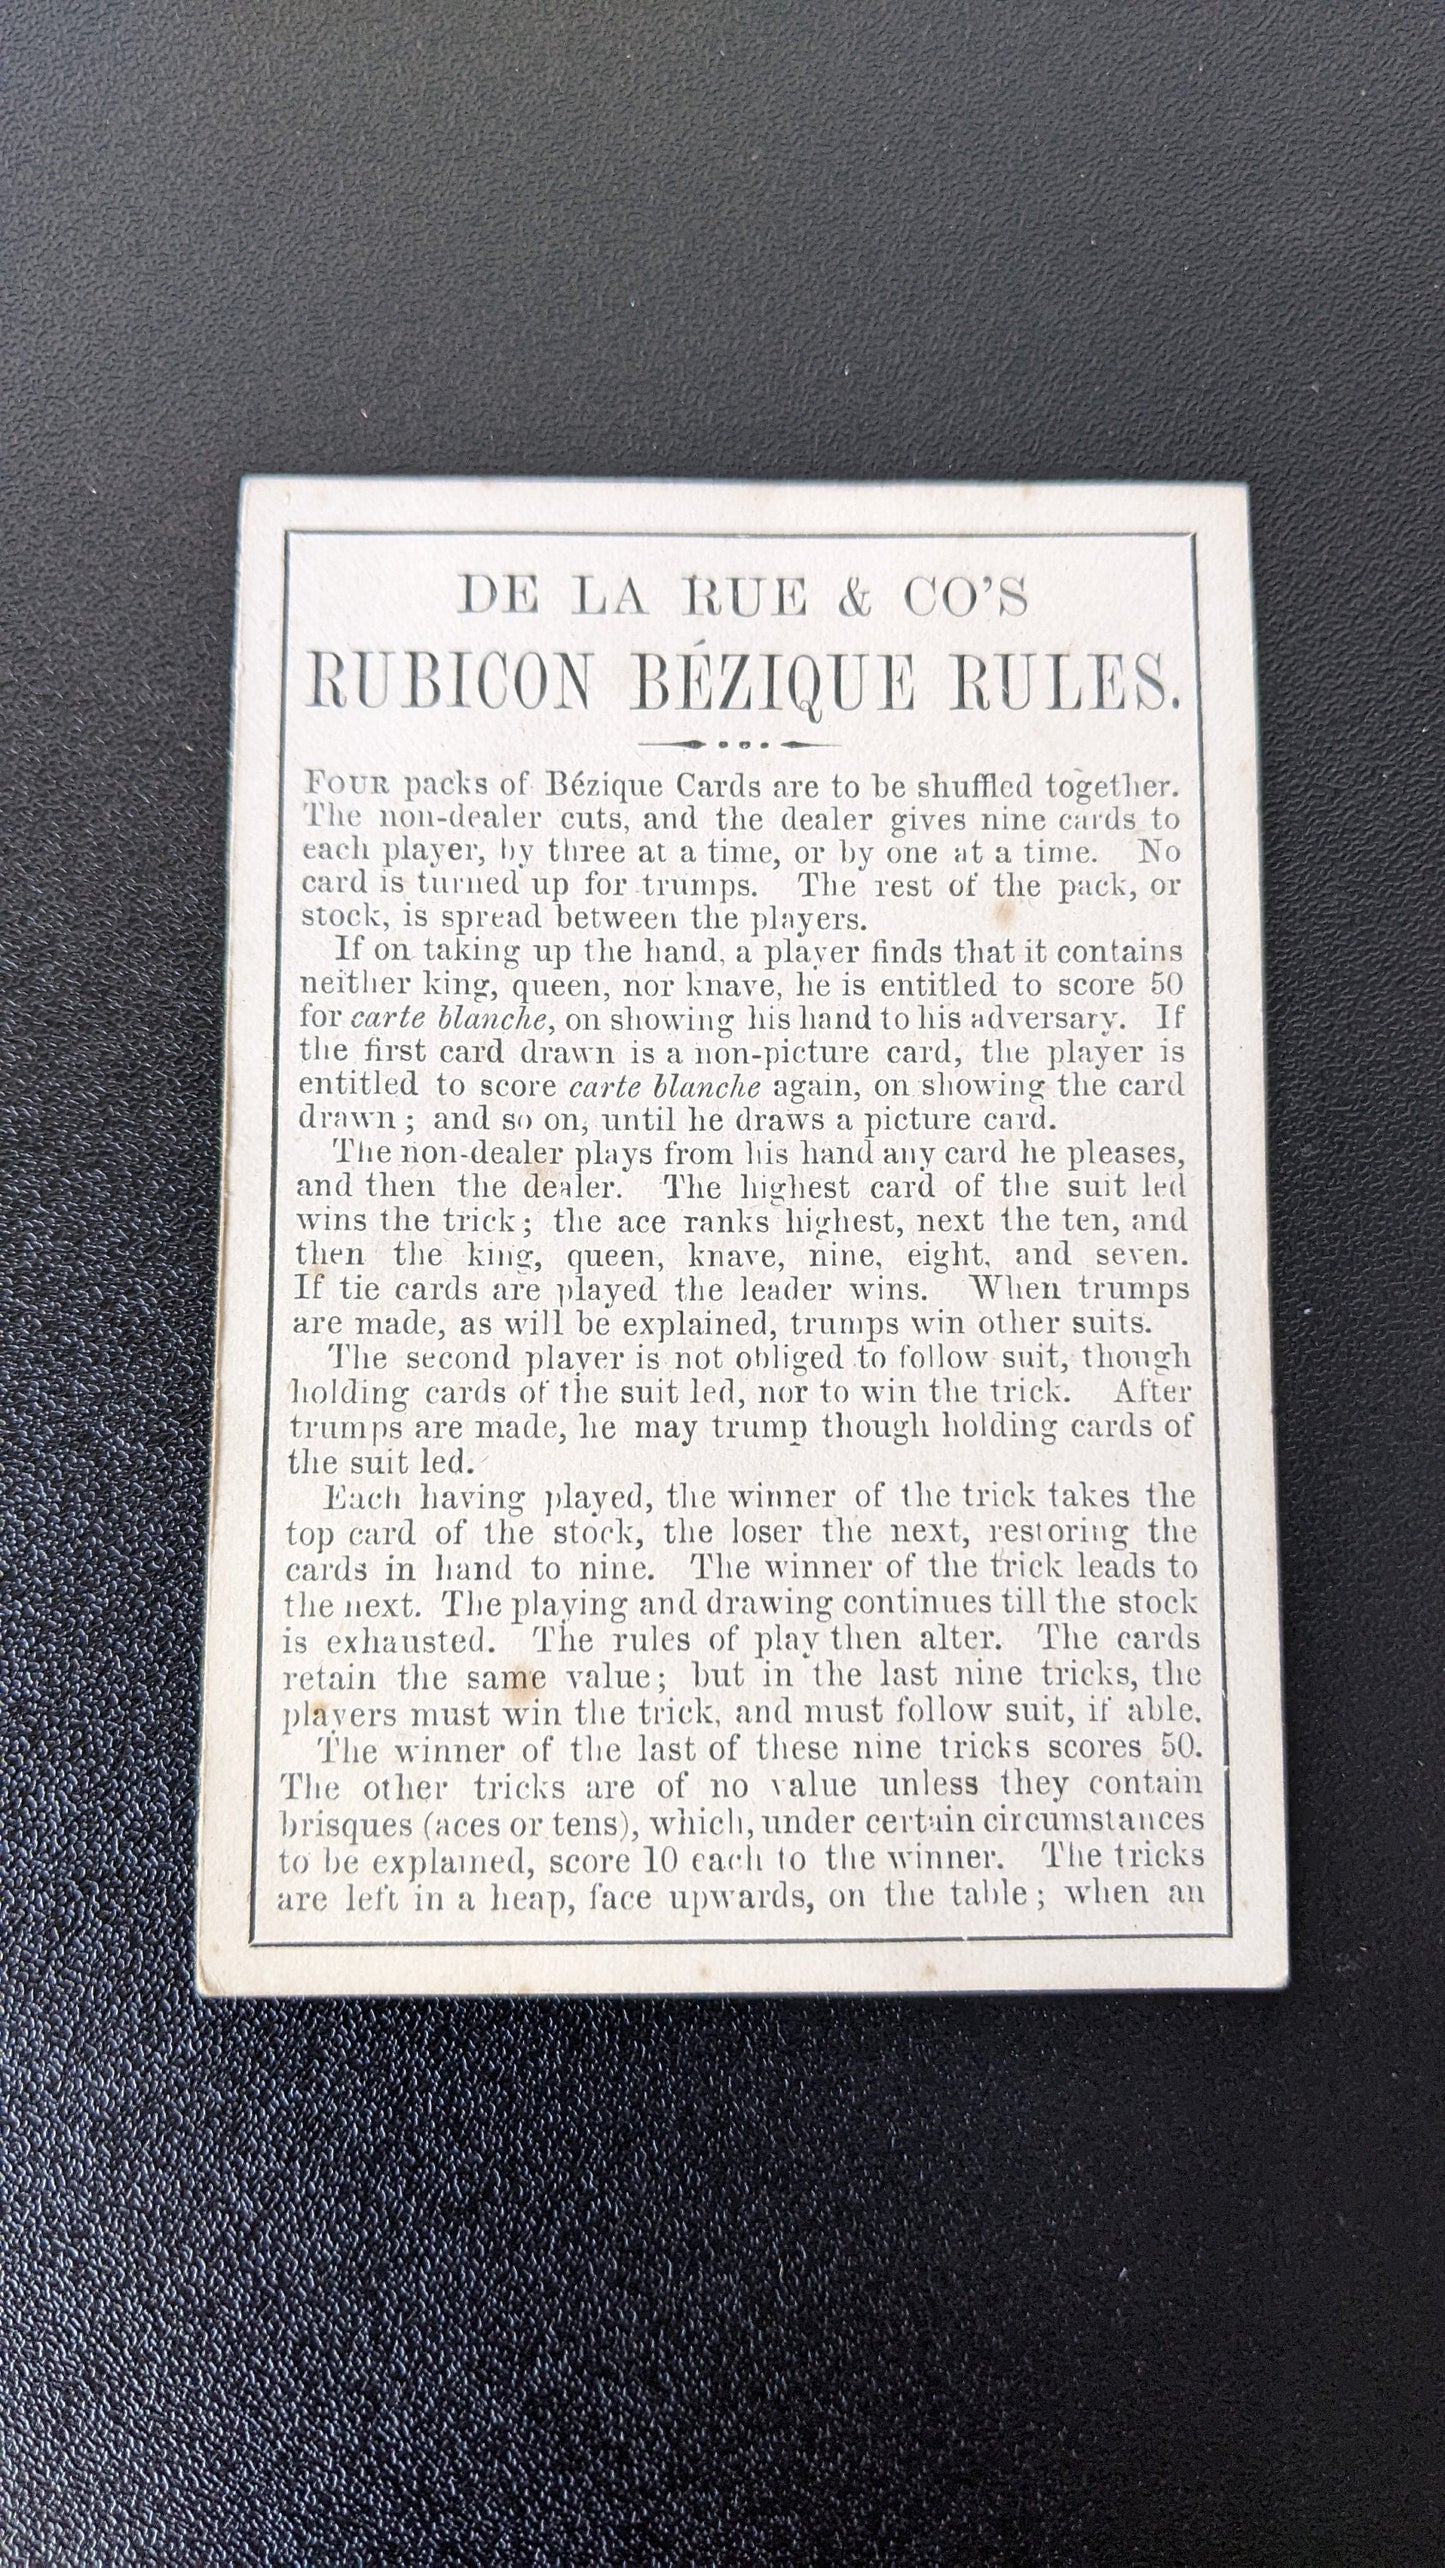 Antique Rubicon Bezique Card Game by De La Rue, 1890s Edition